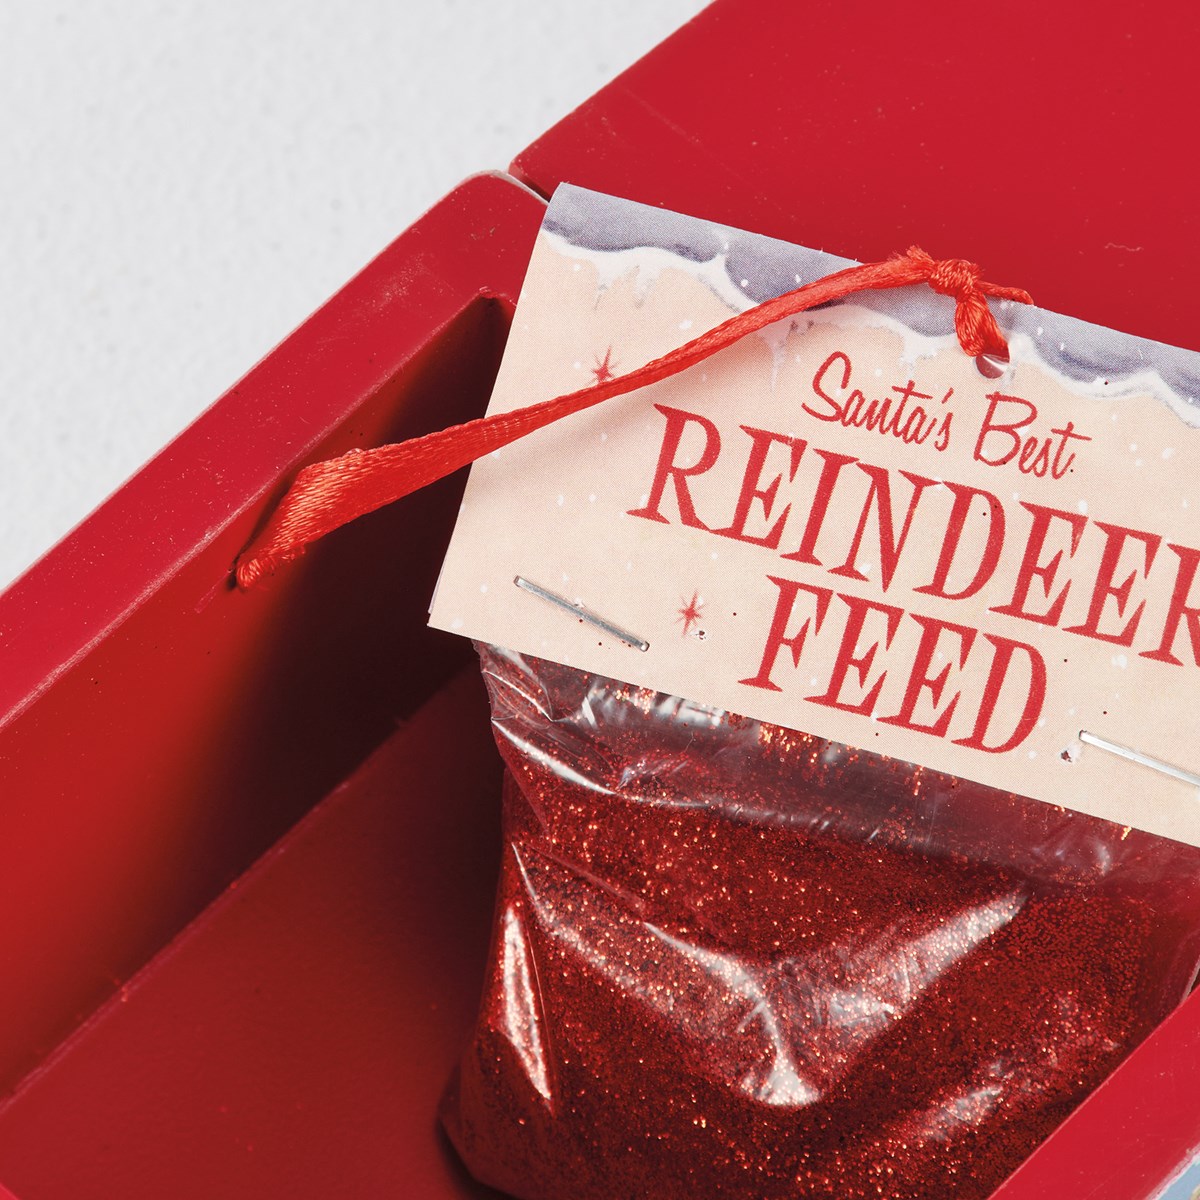 Santa's Best Reindeer Feed Hinged Box - Wood, Paper, Metal, Glitter, Mica